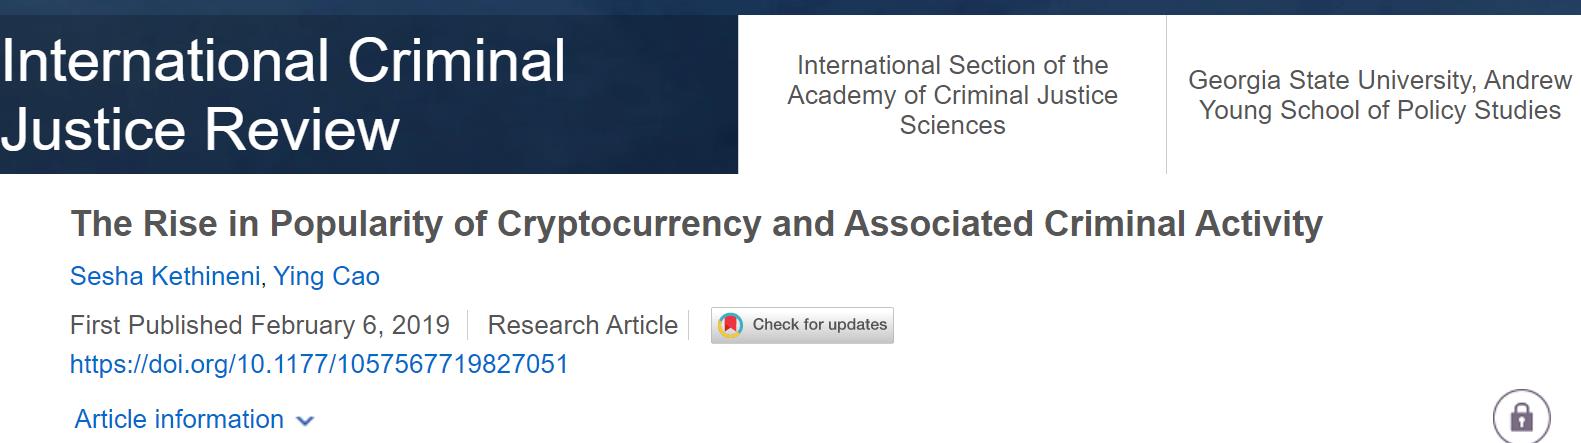 △美国佐治亚州州立大学安德鲁·杨政策研究院在2019年2月发表的研究显示，加密货币和相关犯罪活动的流行度上升。（资料来源：Sage Journals）